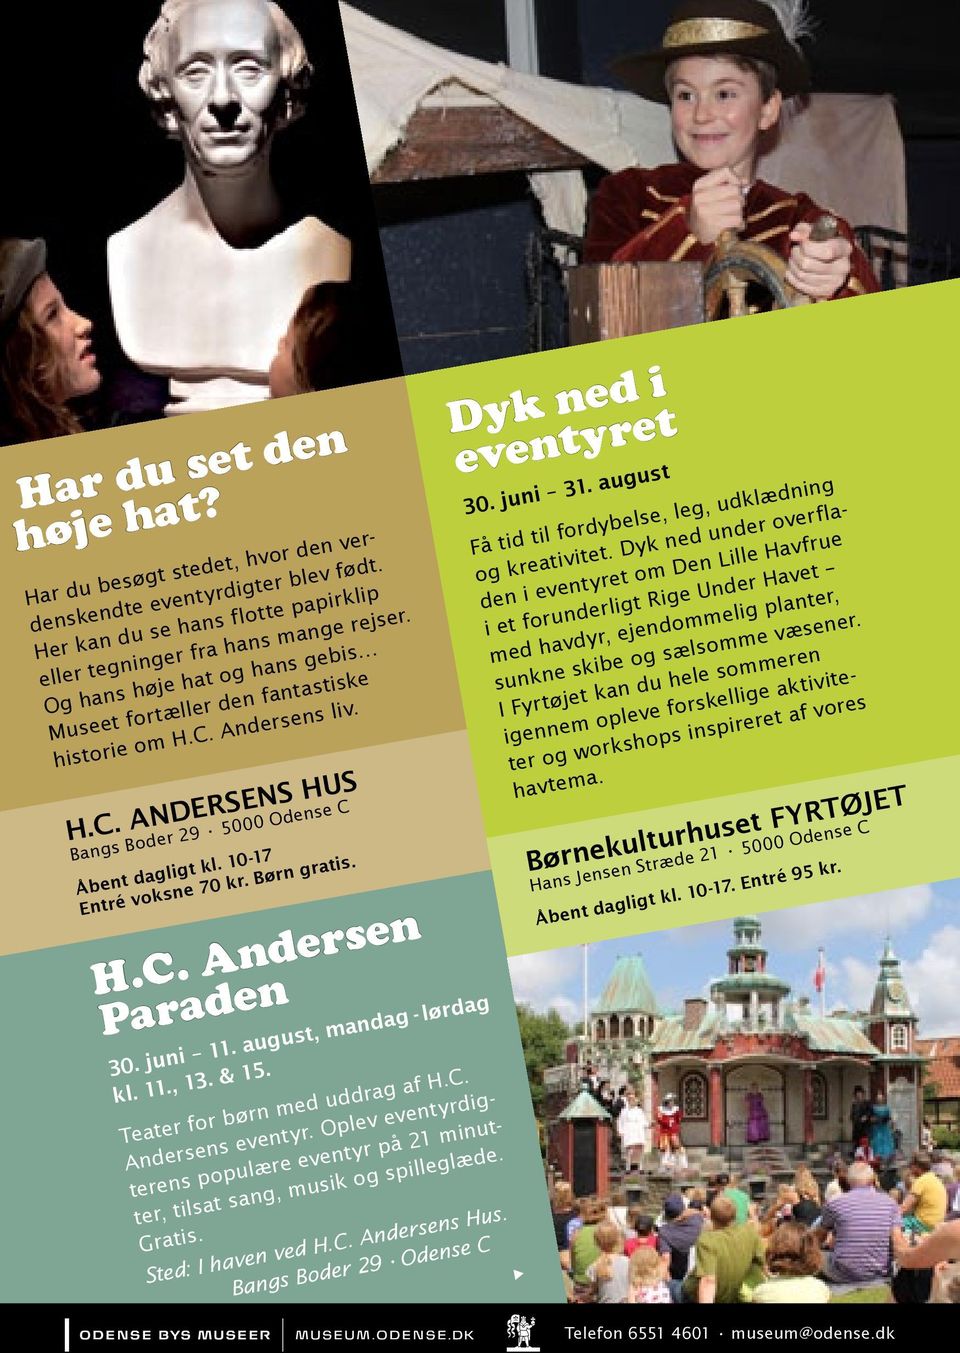 H.C. Andersen Paraden 30. juni 11. august, mandag - lørdag kl. 11., 13. & 15. Teater for børn med uddrag af H.C. Andersens eventyr.